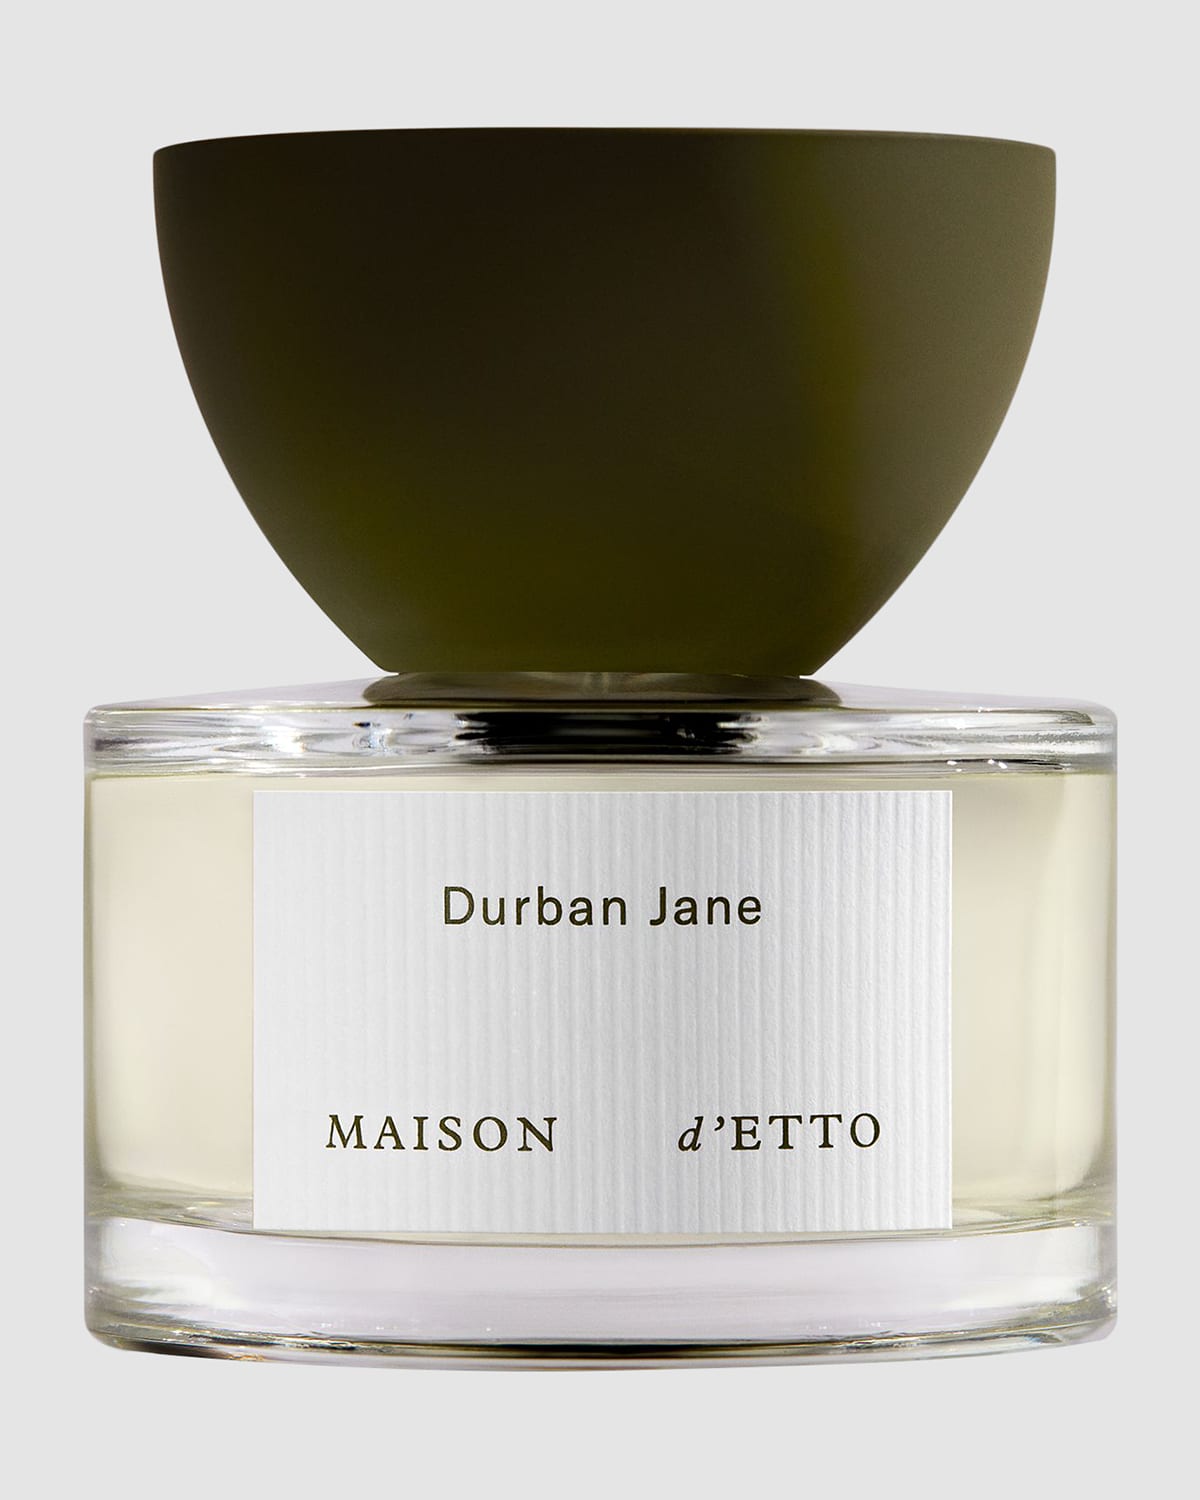 Durban Jane Eau de Parfum, 2 oz./ 60 mL